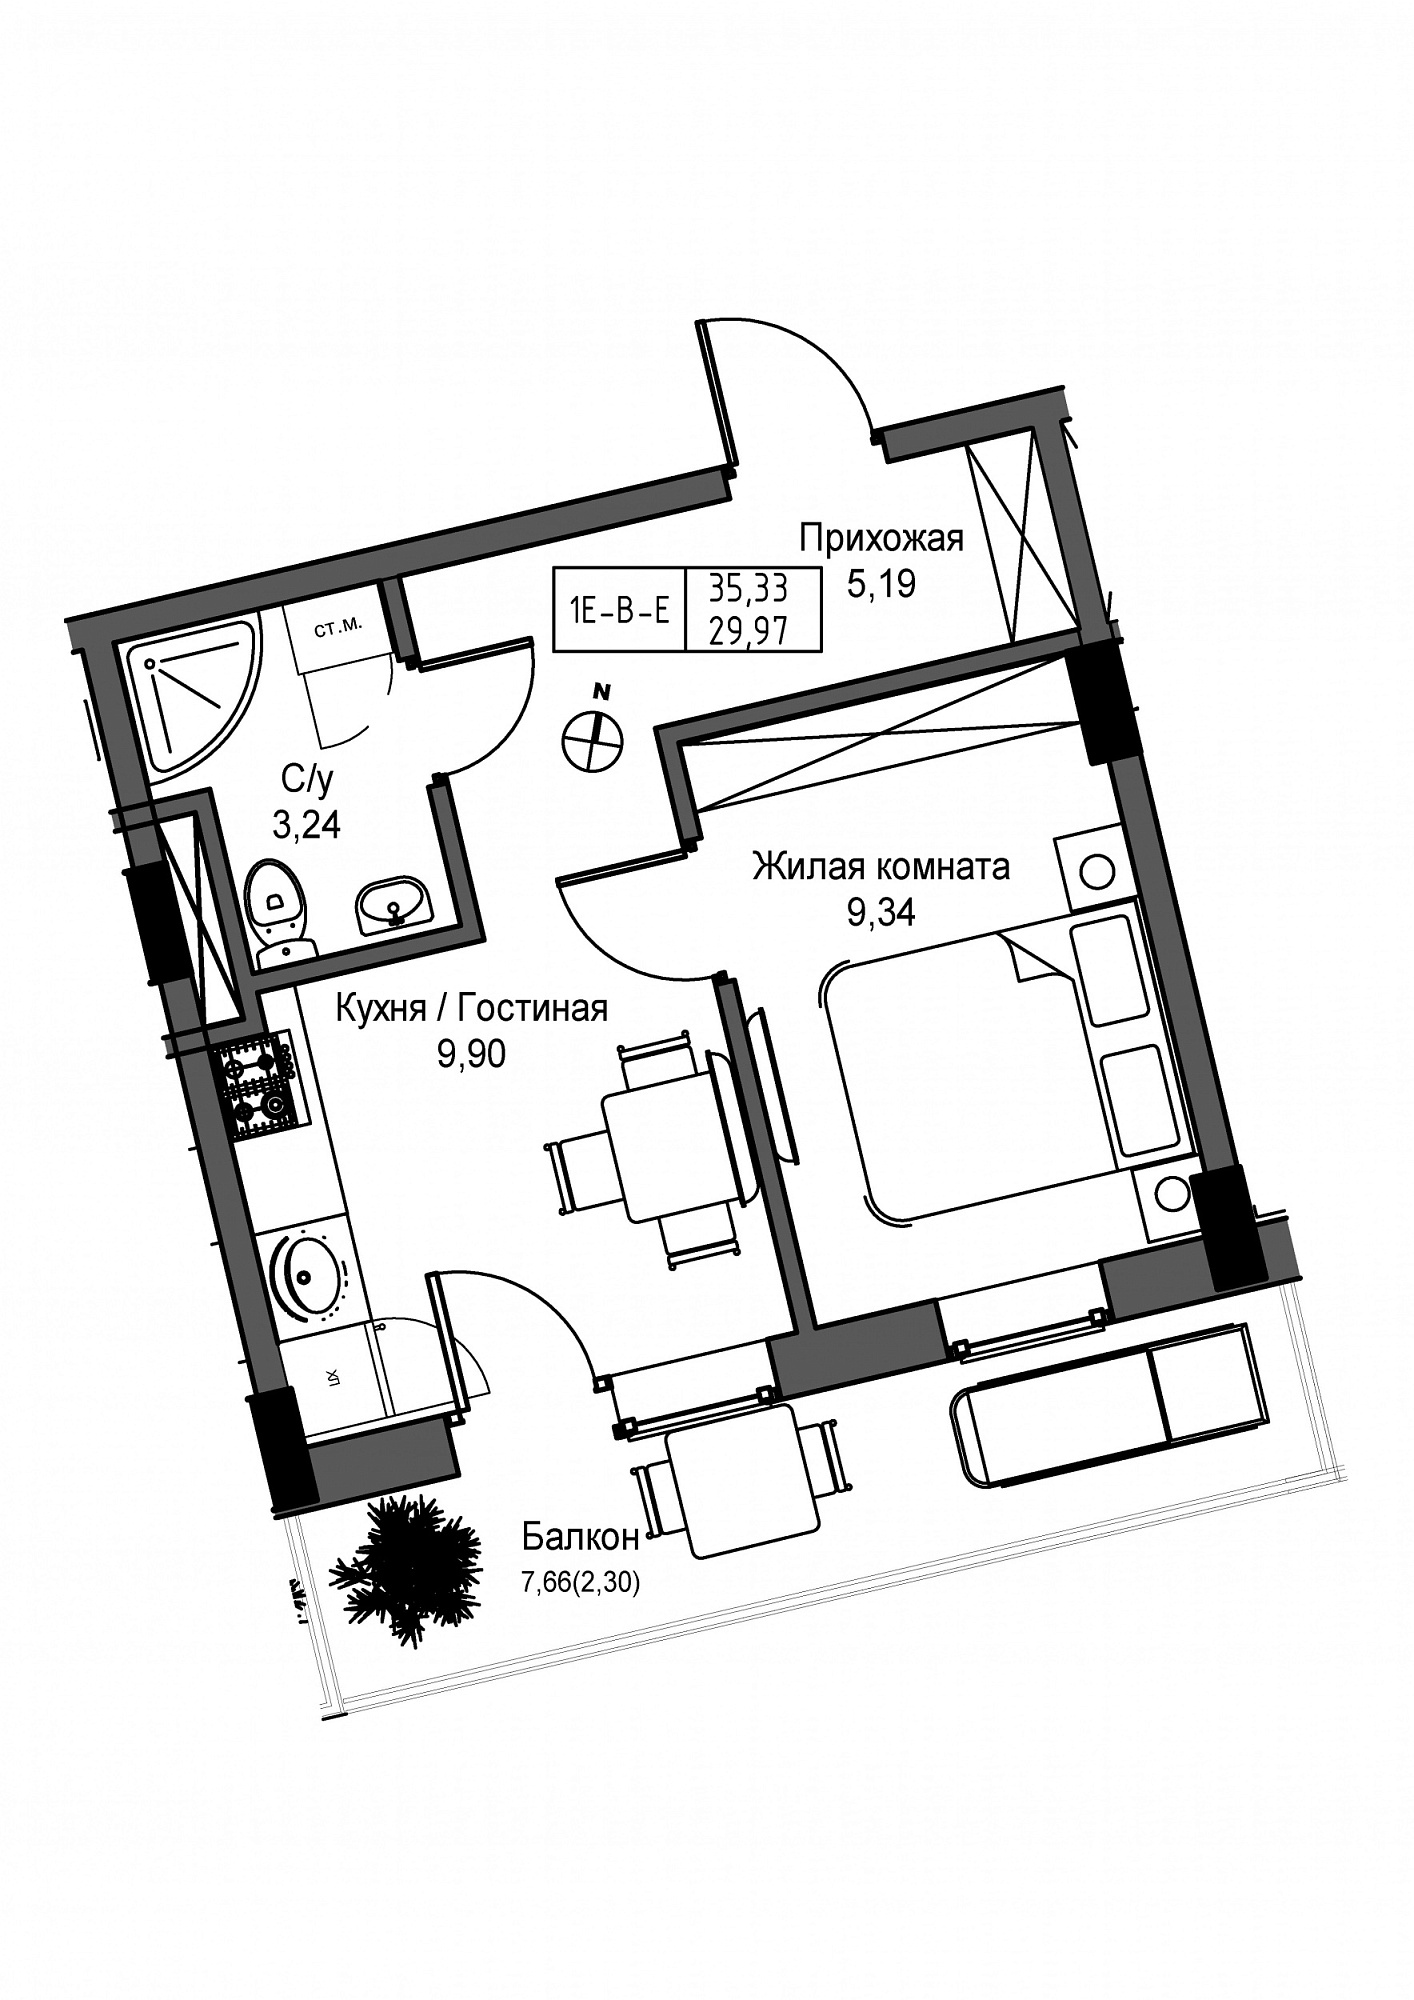 Планировка 1-к квартира площей 29.97м2, UM-004-07/0013.